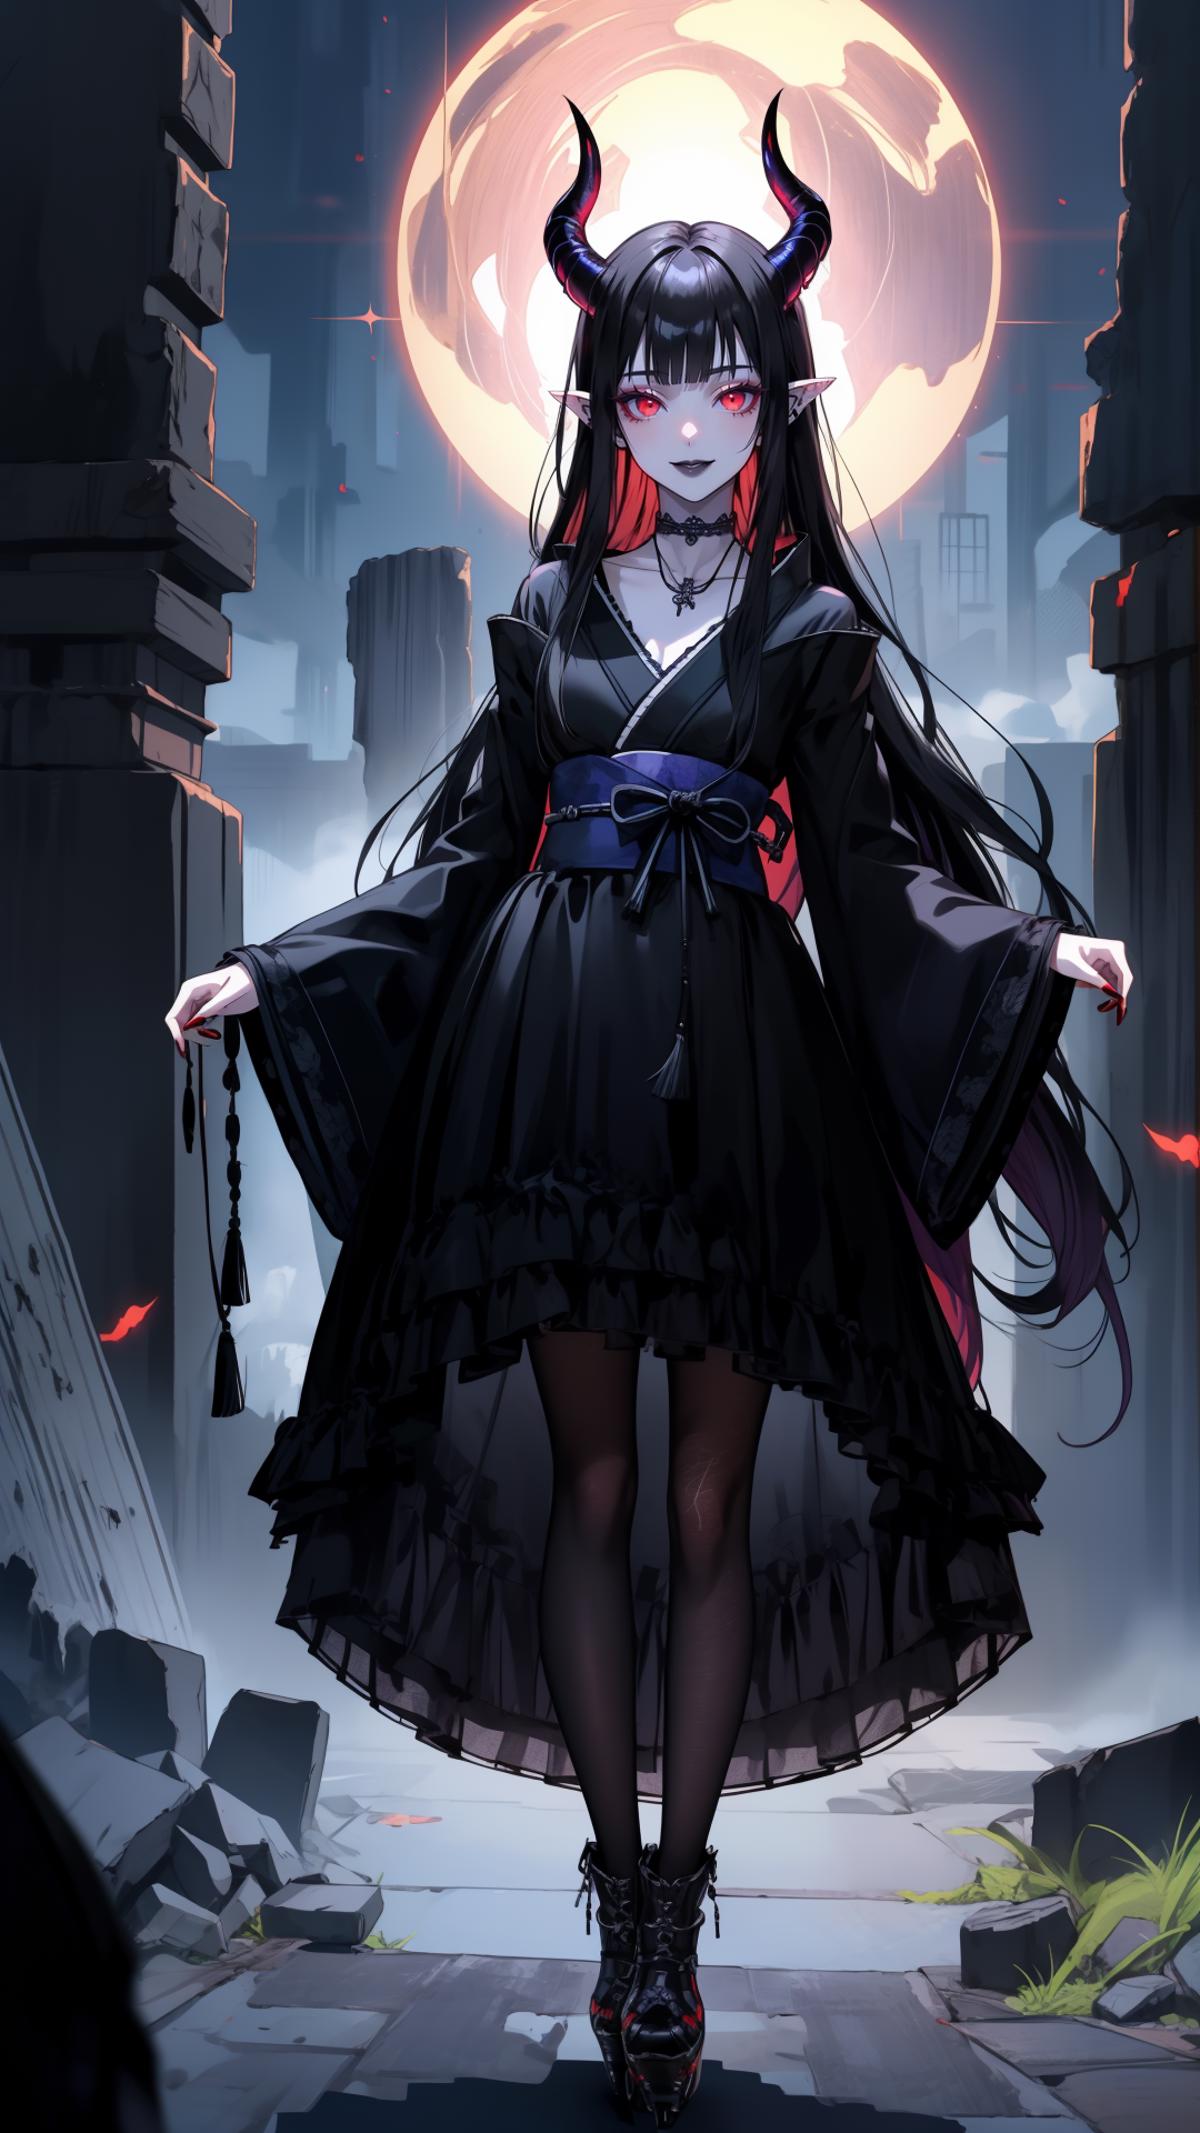 Gothic Girl image by GDogz